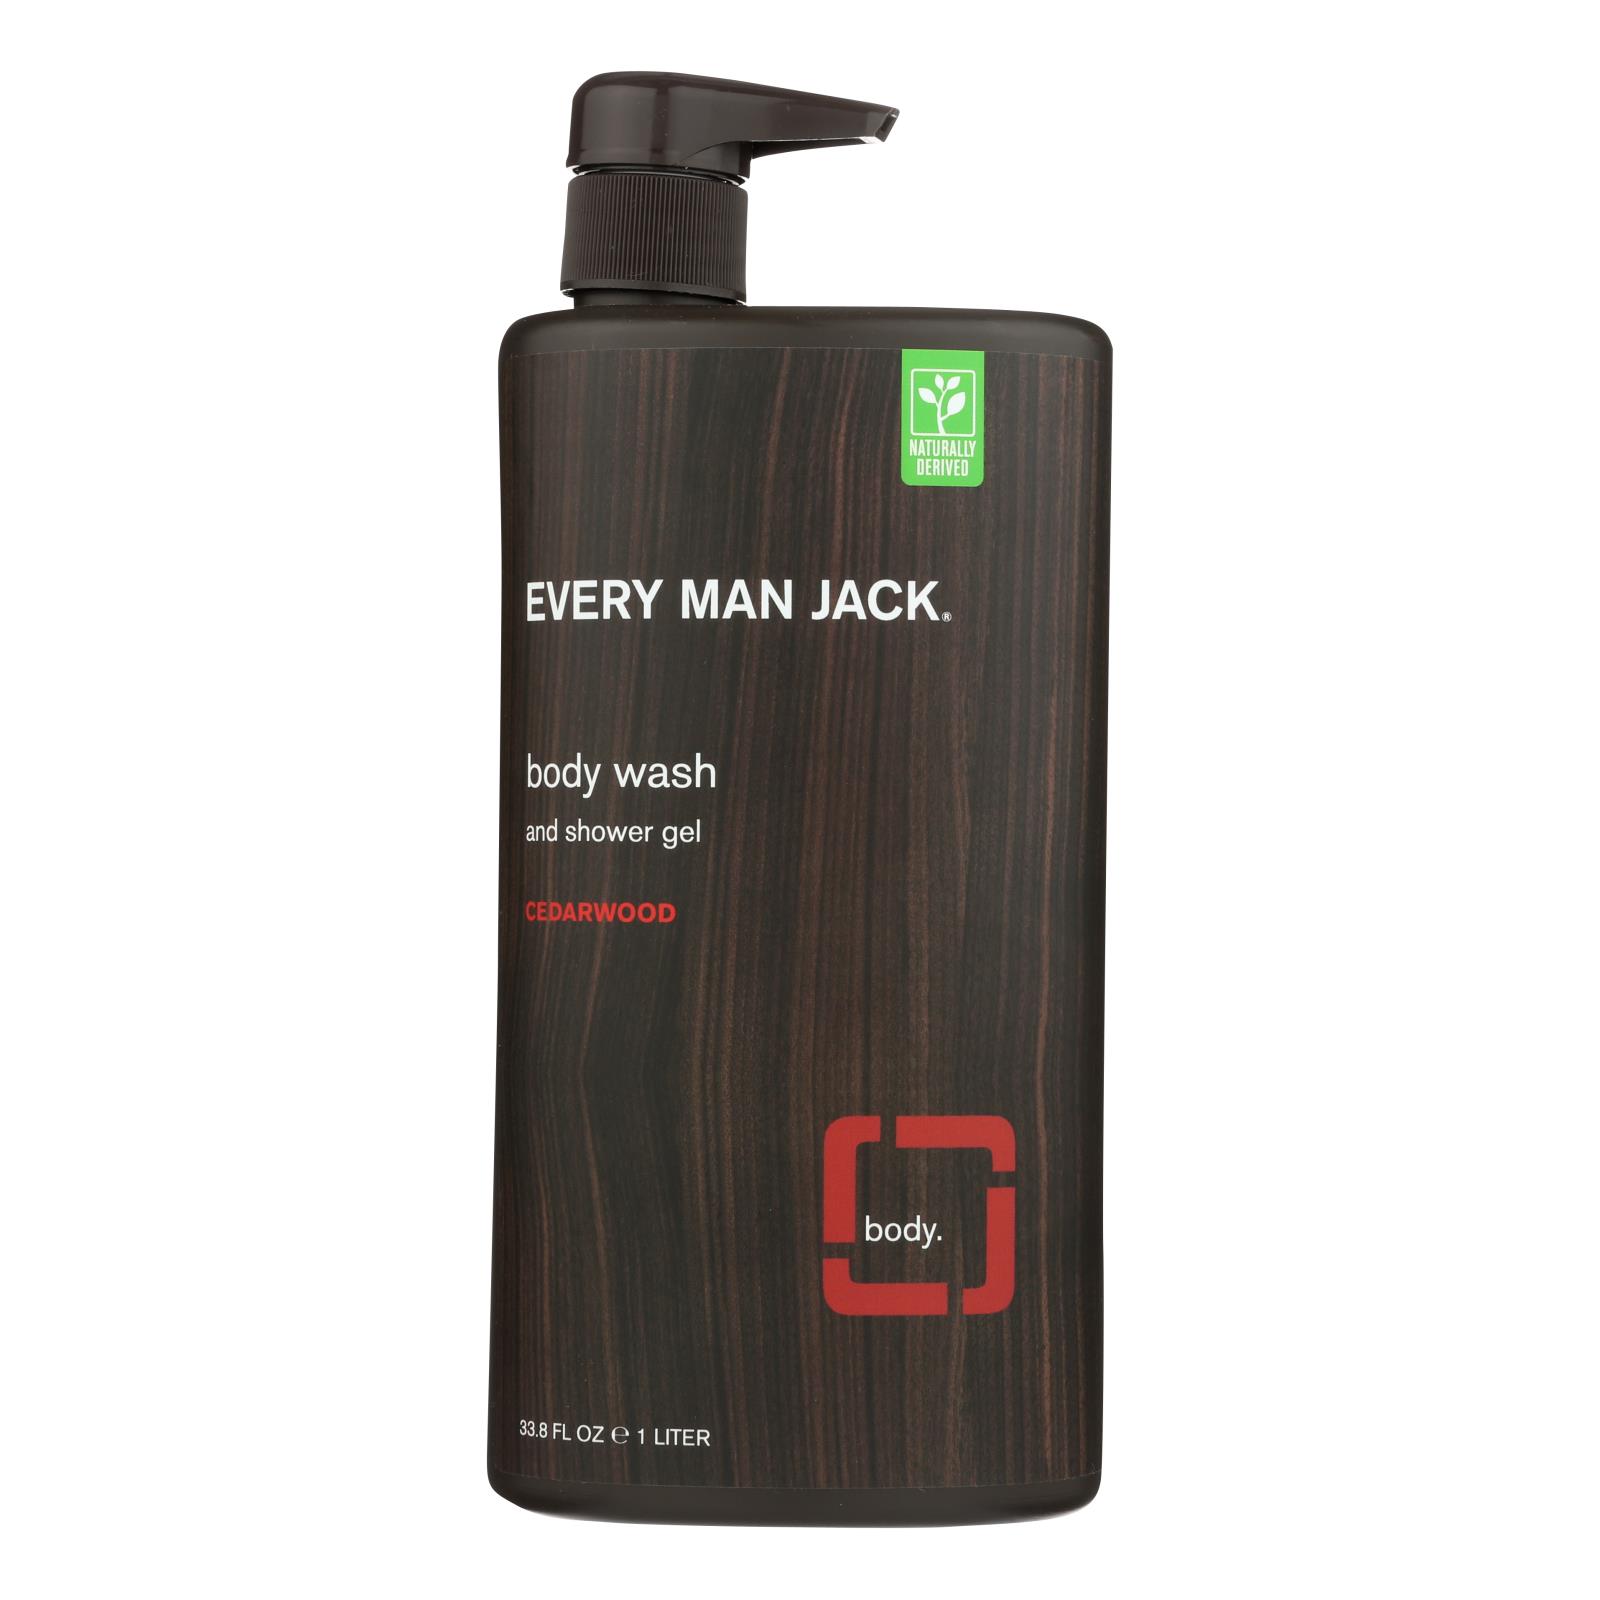 Every Man Jack Body Wash Cedarwood Body Wash - 1 Each - 33.8 fl oz.